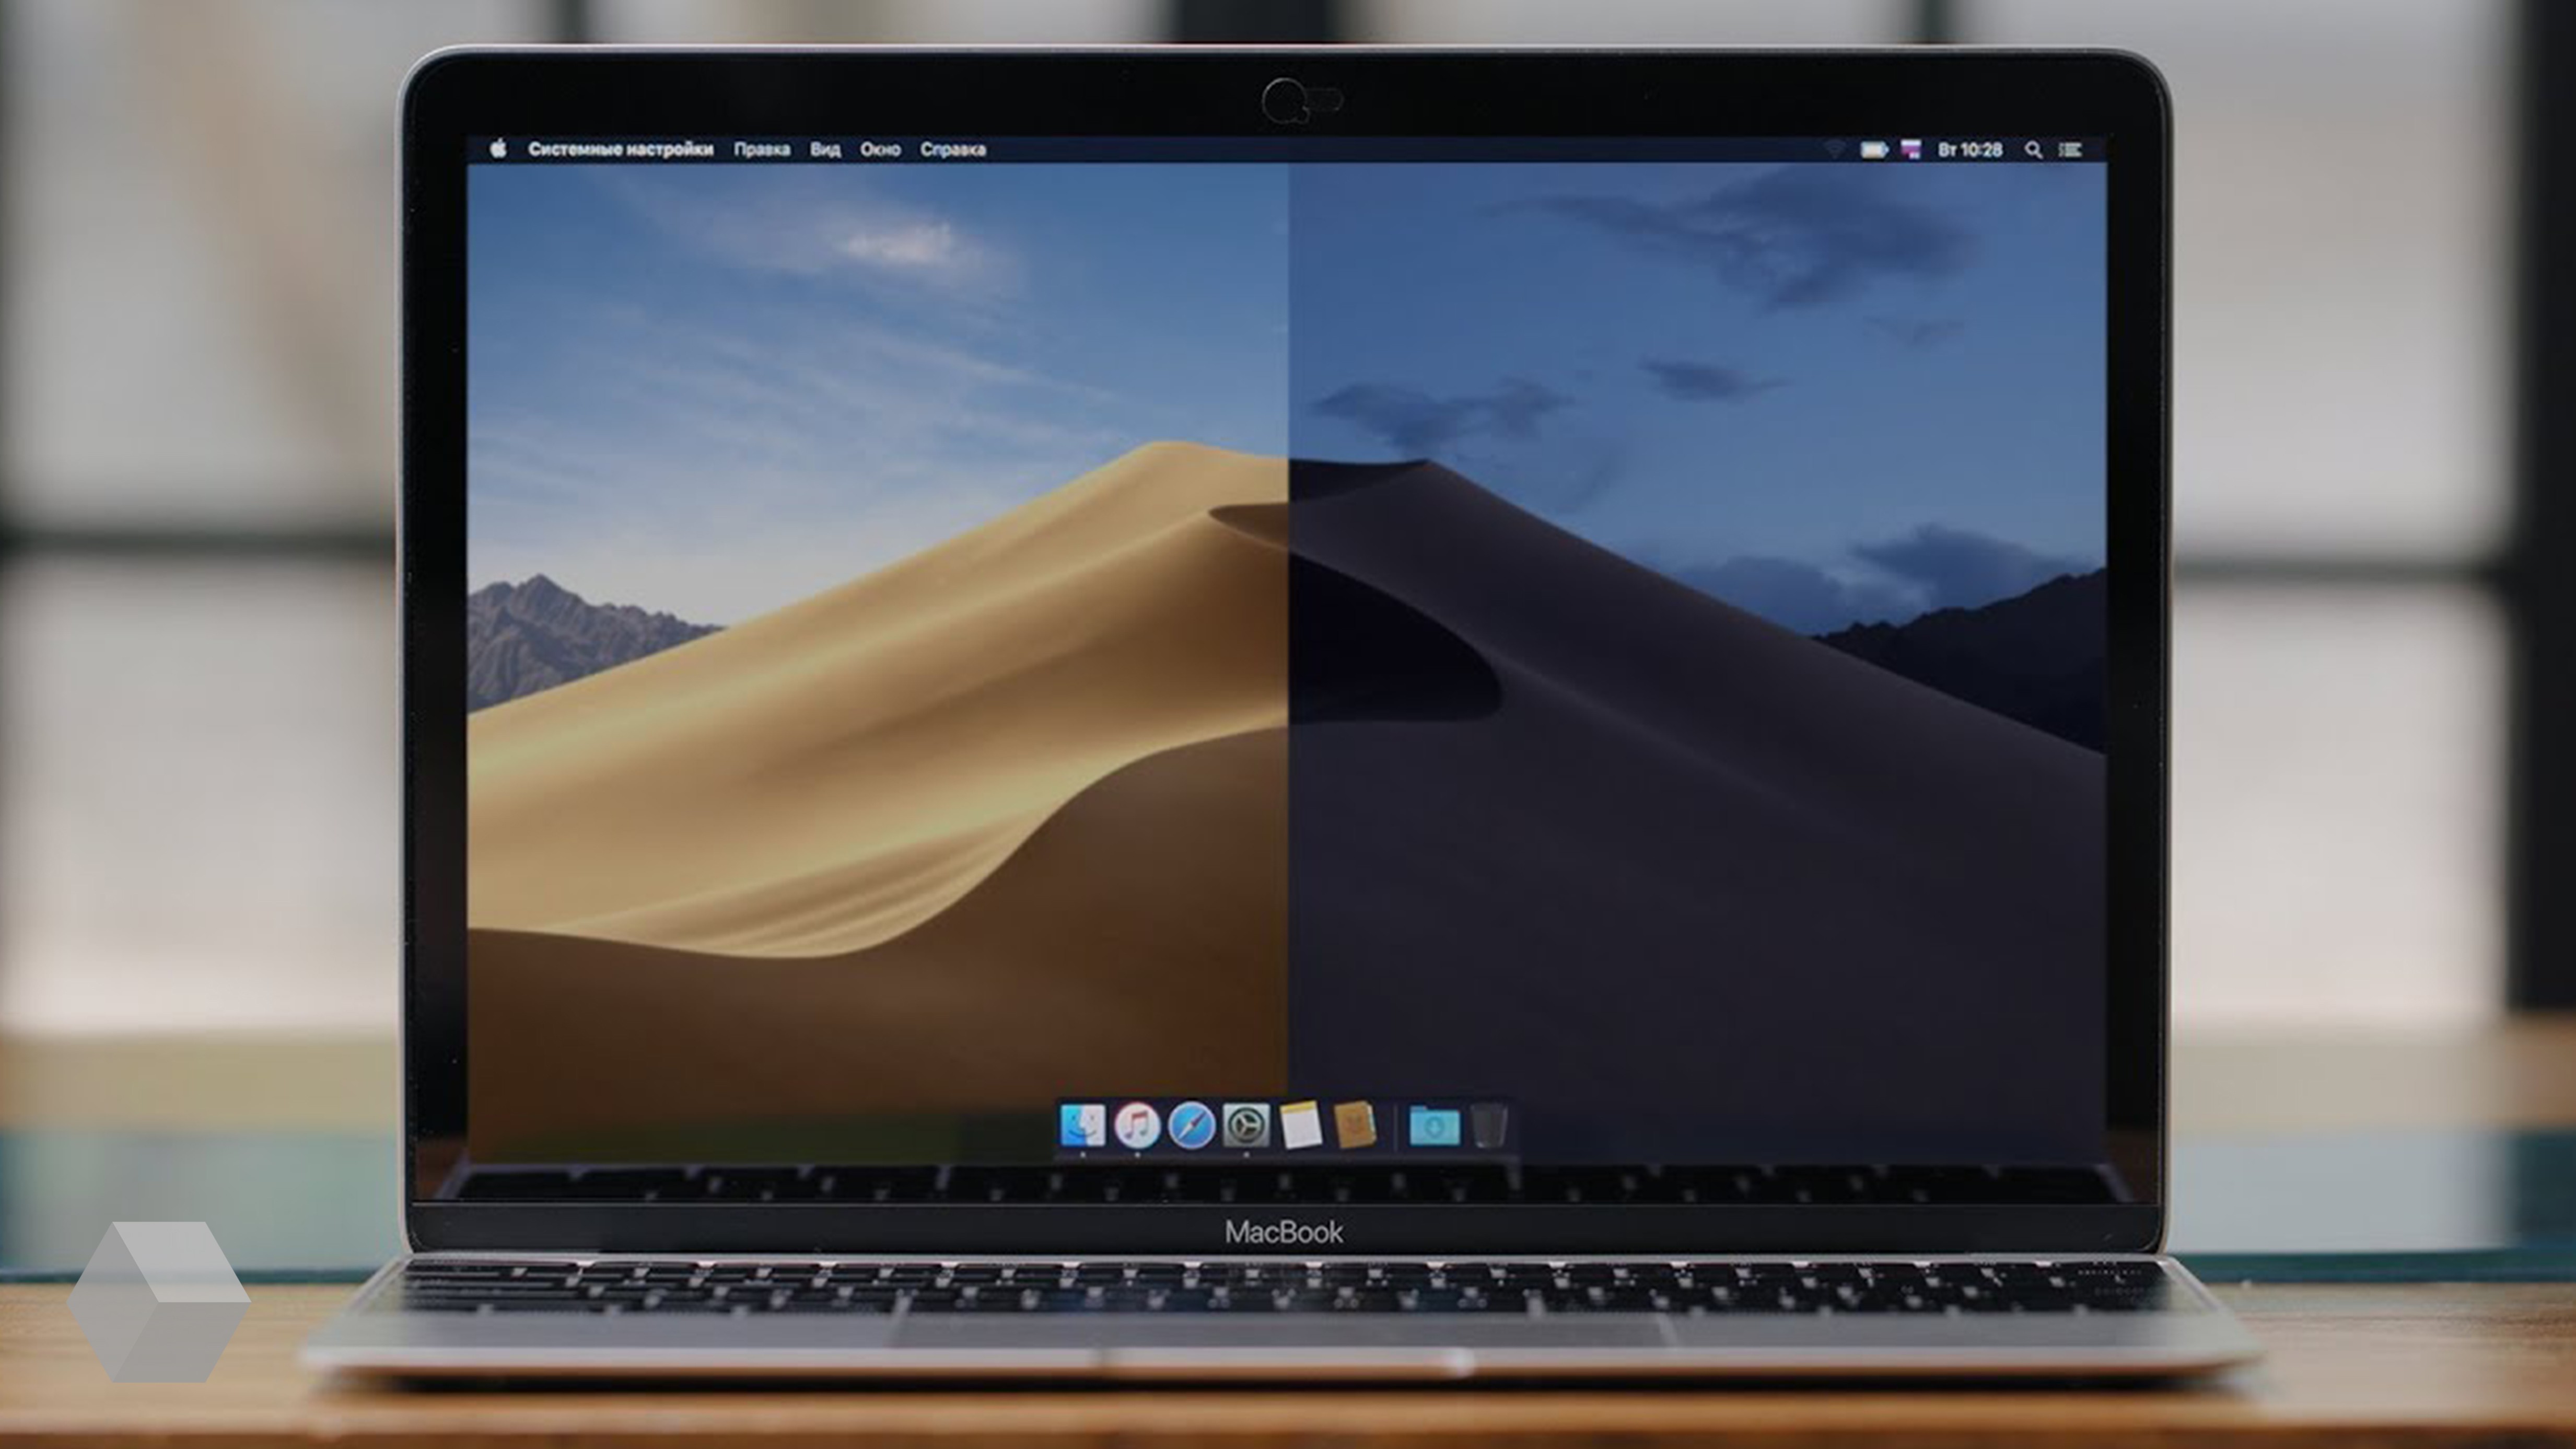 Обновиться до macOS Mojave можно будет уже 24 сентября